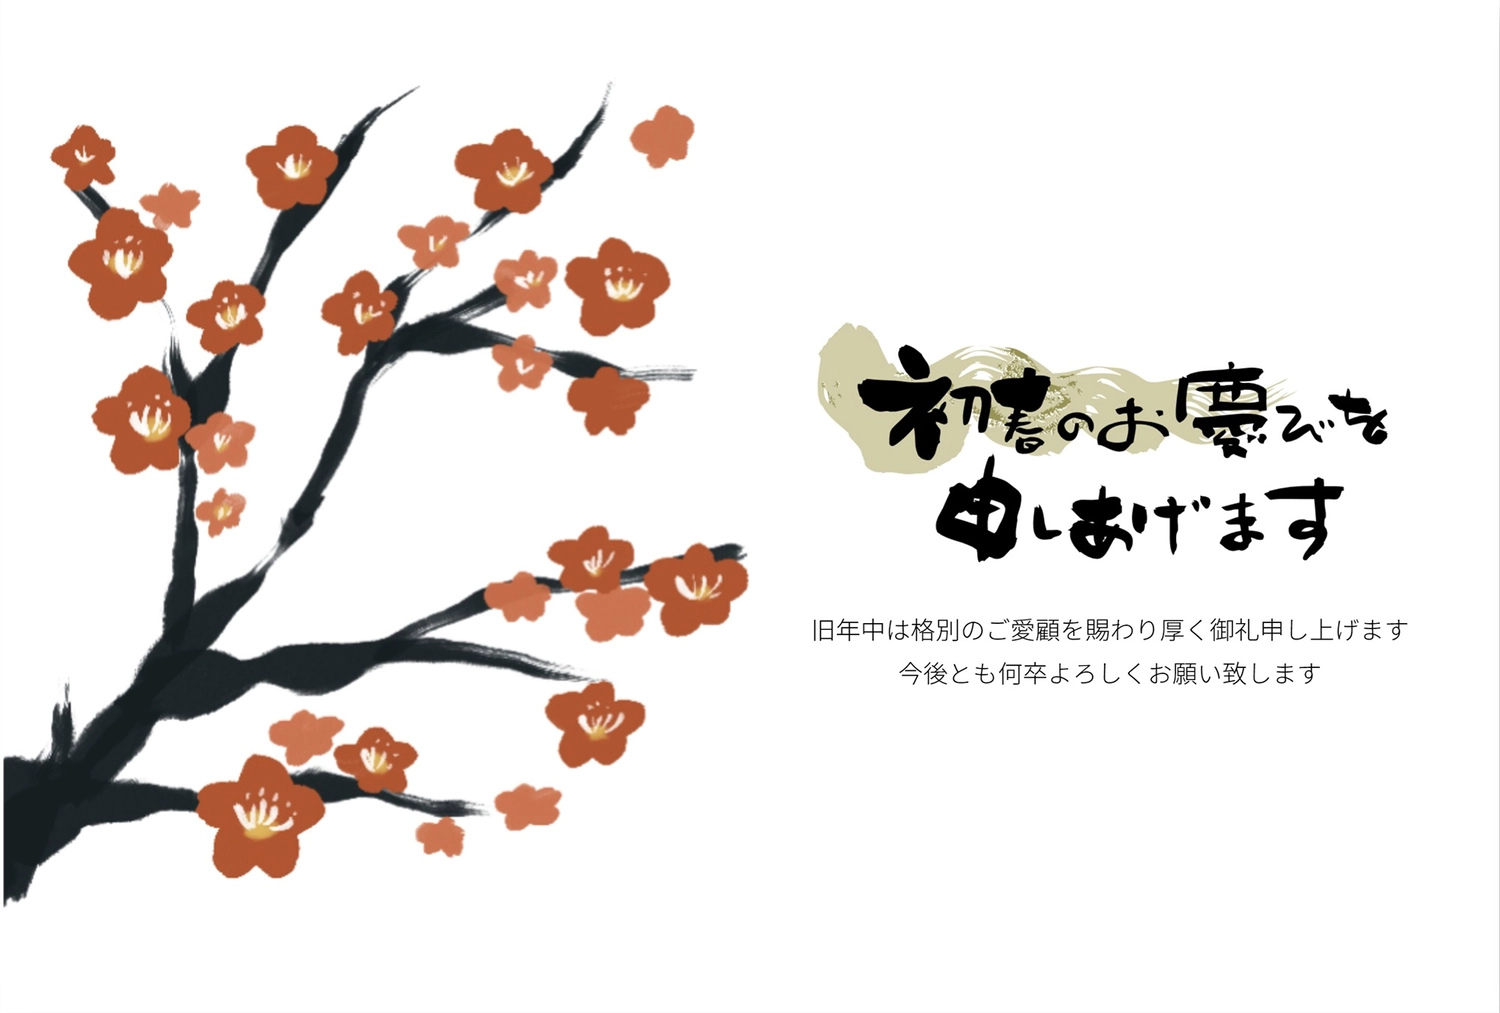 梅の花の年賀状, bông hoa, lề, 筆字, Thiệp năm mới mẫu